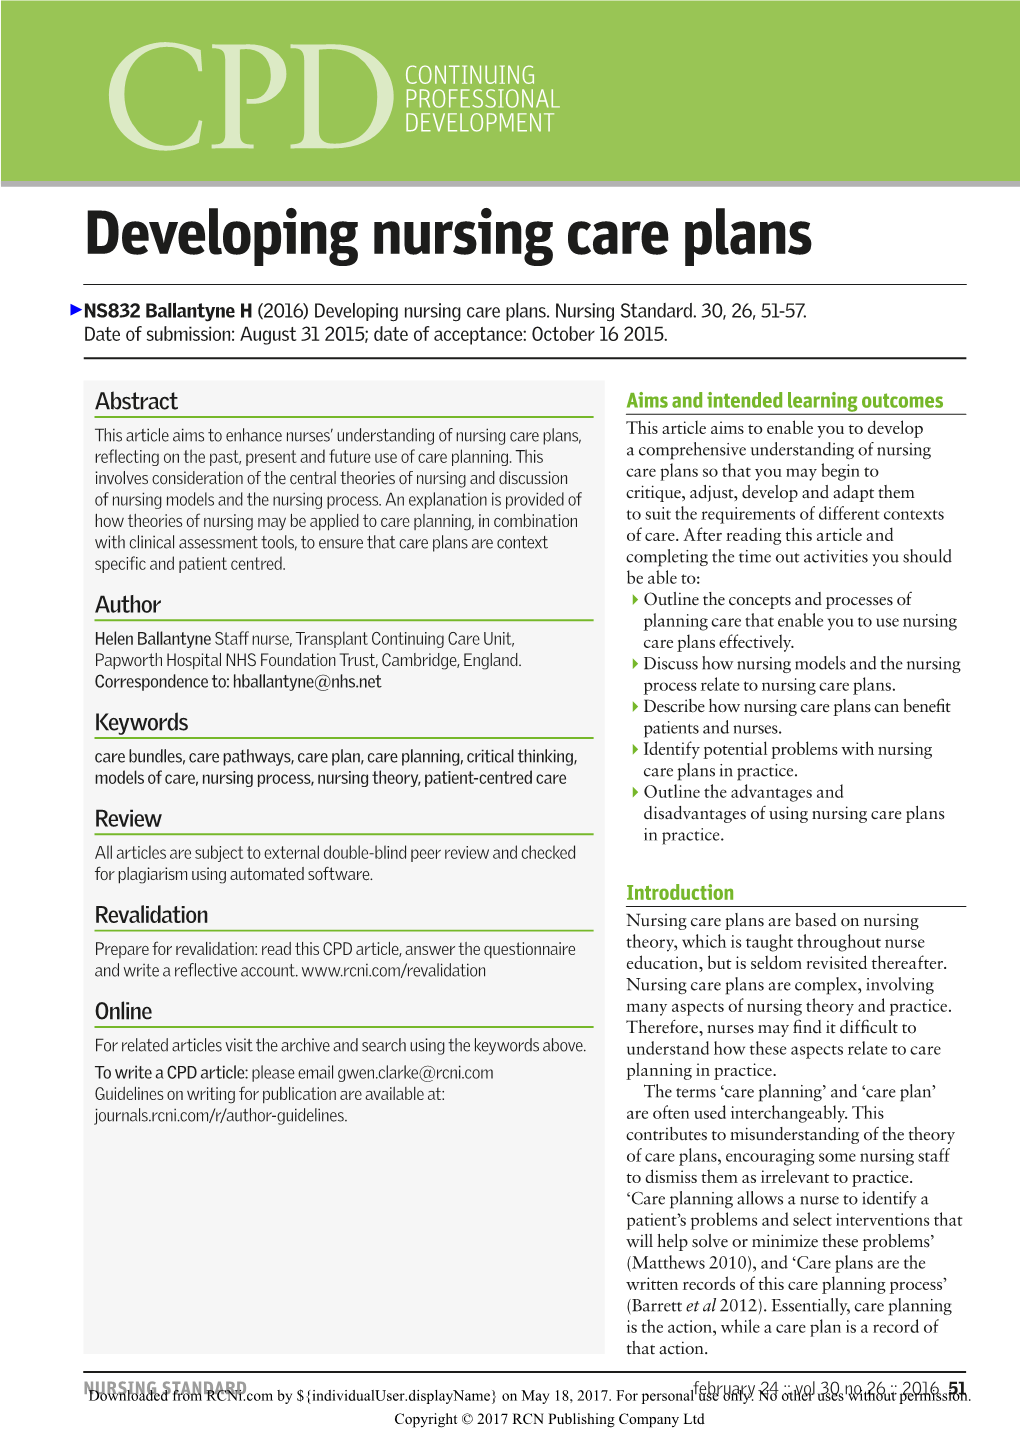 Developing Nursing Care Plans